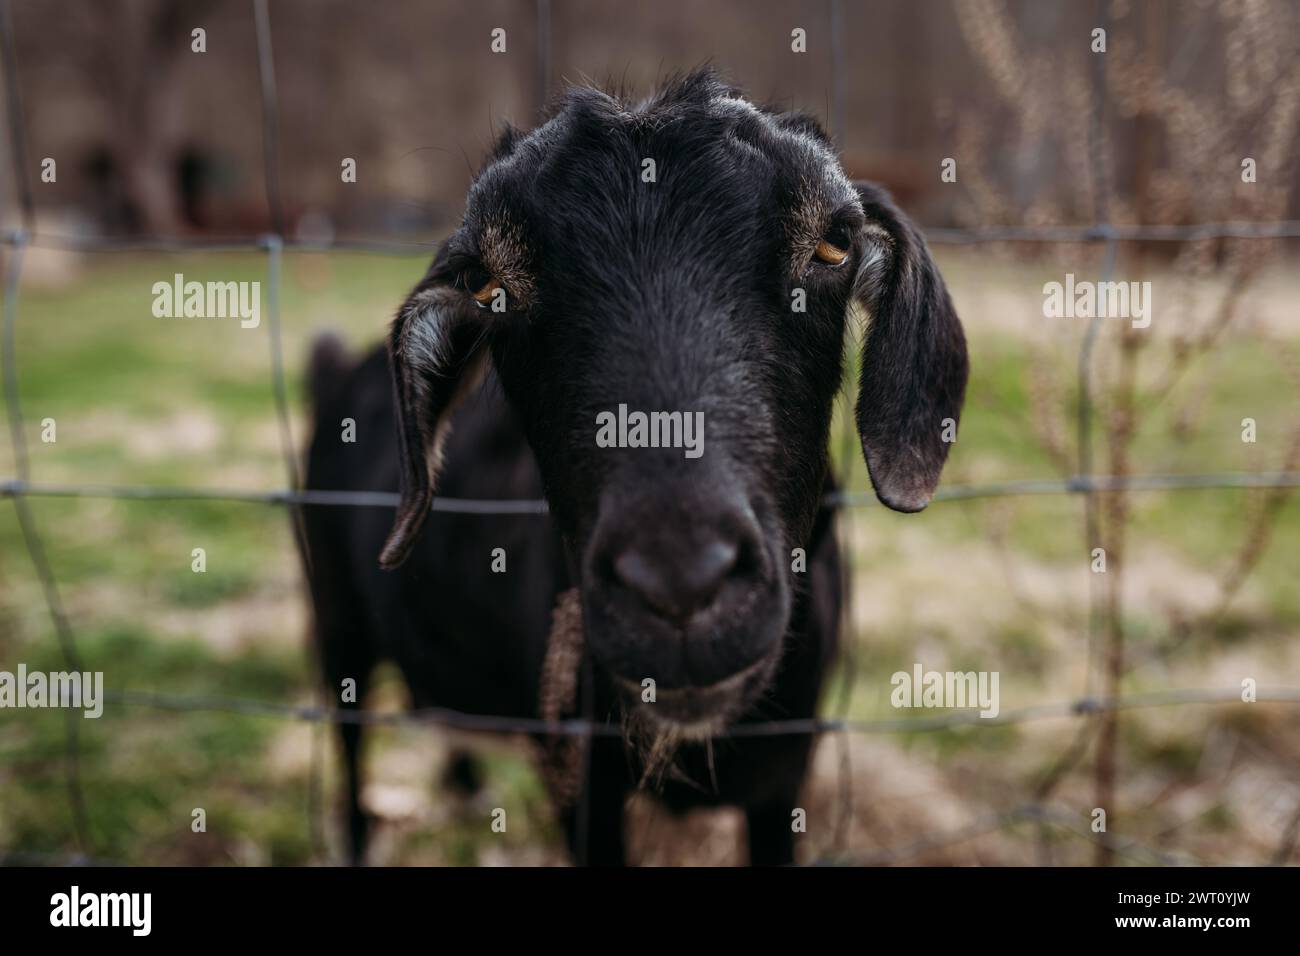 Gros plan de chèvre nubienne noire collant la tête à travers la clôture Banque D'Images